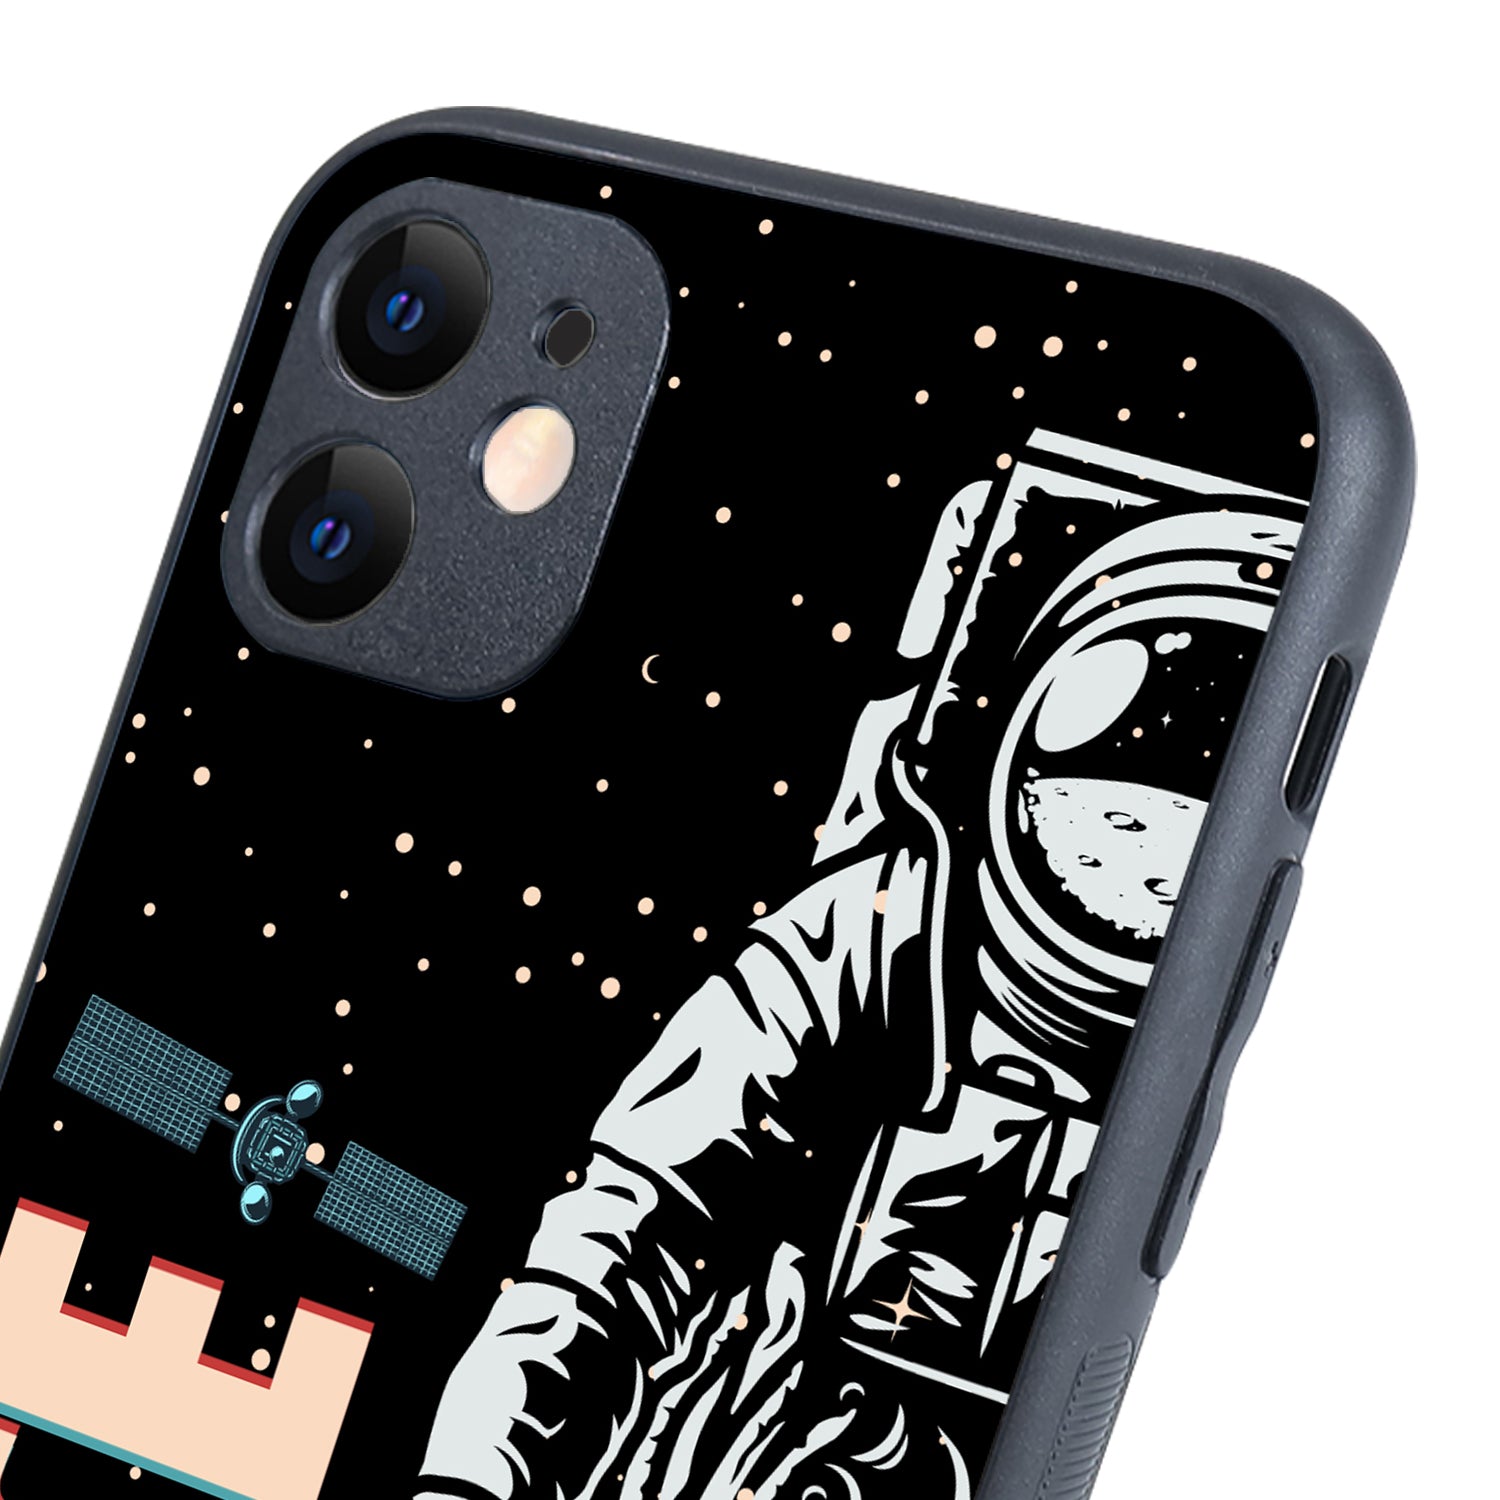 Space Explorer iPhone 11 Case